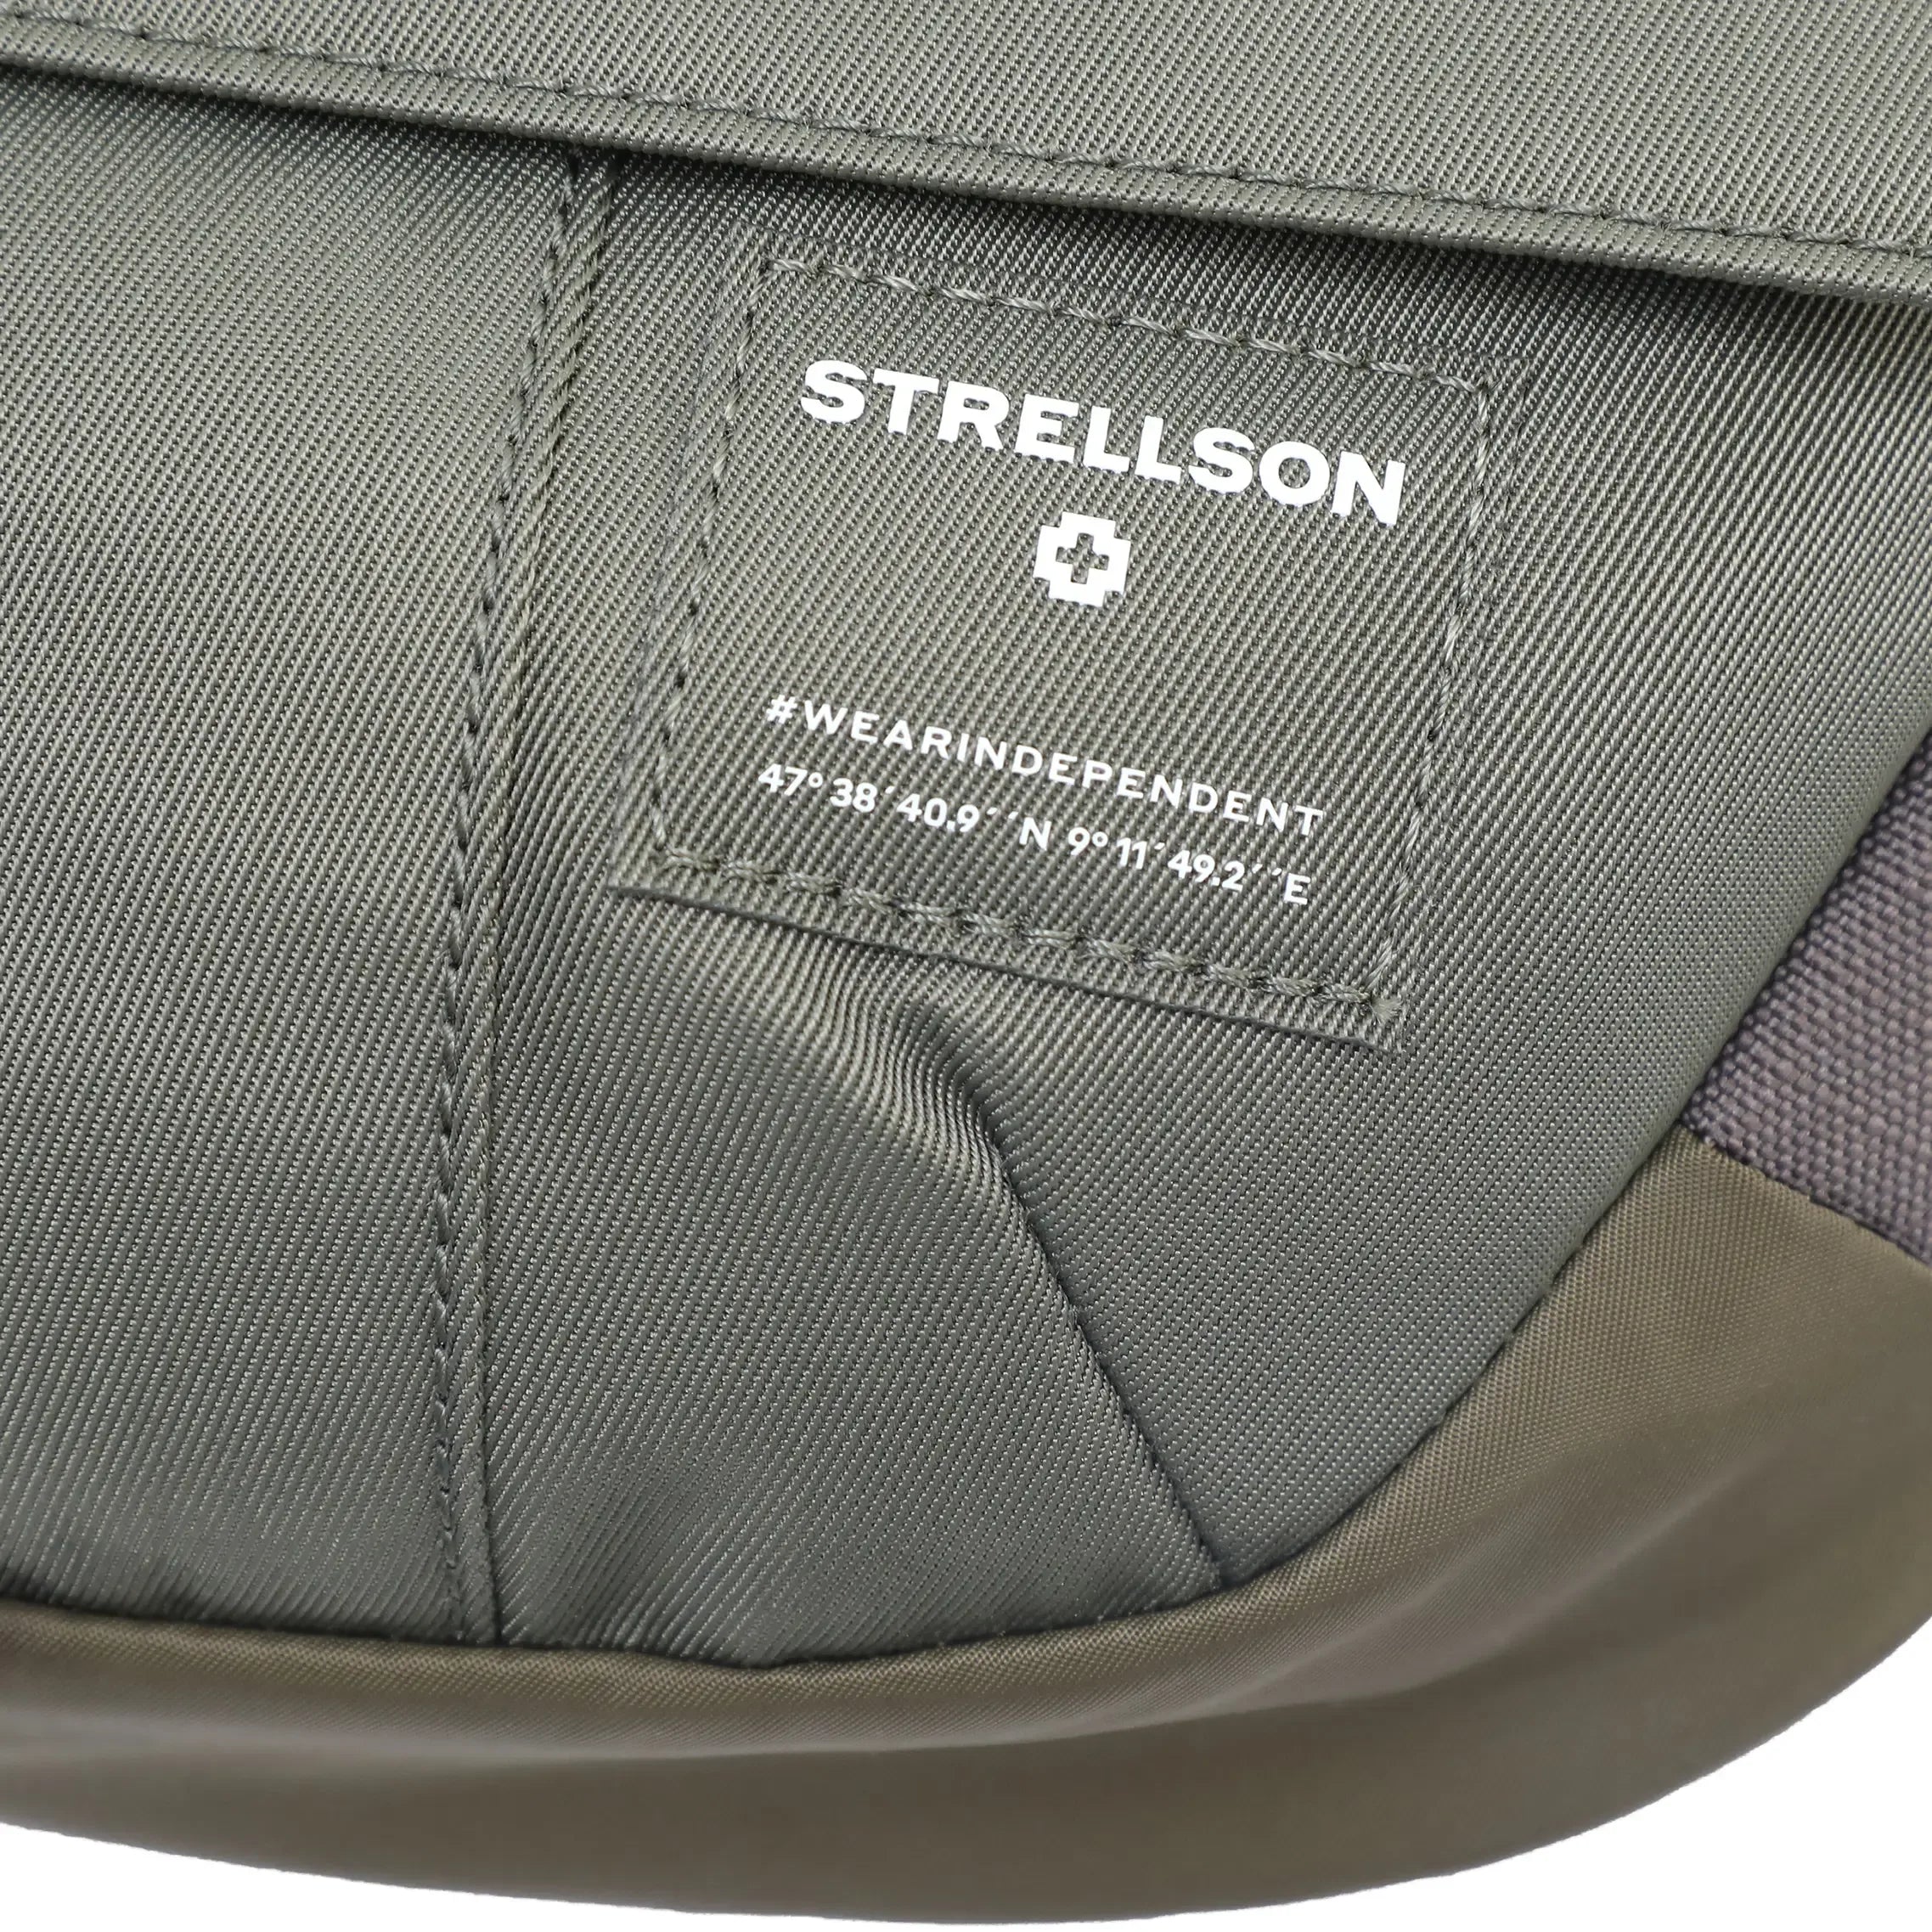 Strellson Southwark Toby Shoulderbag XSHZ 25 cm - Black